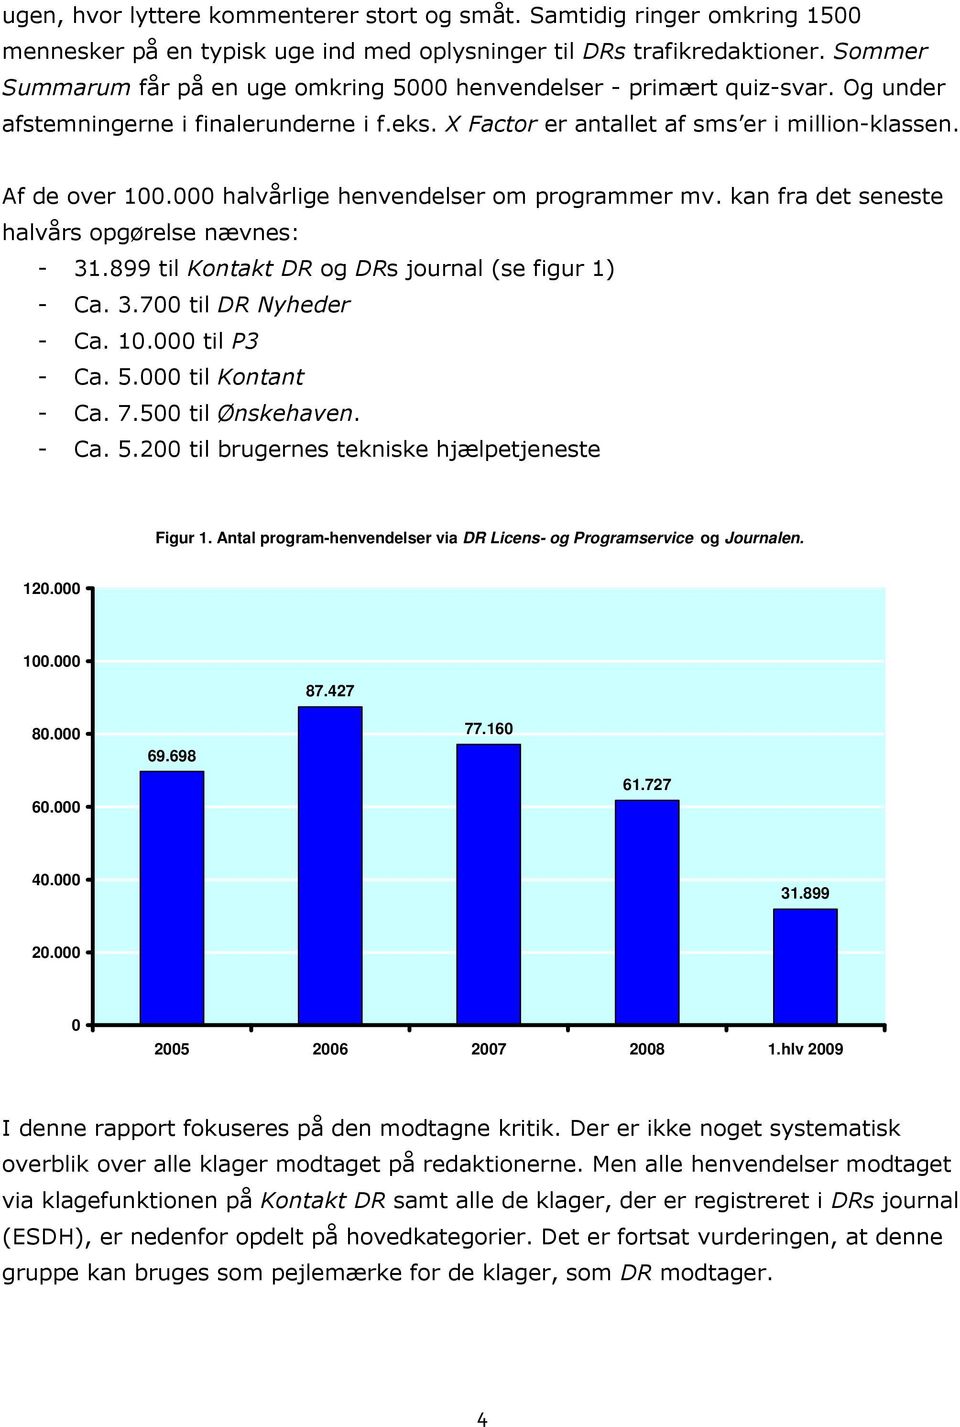 000 halvårlige henvendelser om programmer mv. kan fra det seneste halvårs opgørelse nævnes: - 31.899 til Kontakt DR og DRs journal (se figur 1) - Ca. 3.700 til DR Nyheder - Ca. 10.000 til P3 - Ca. 5.